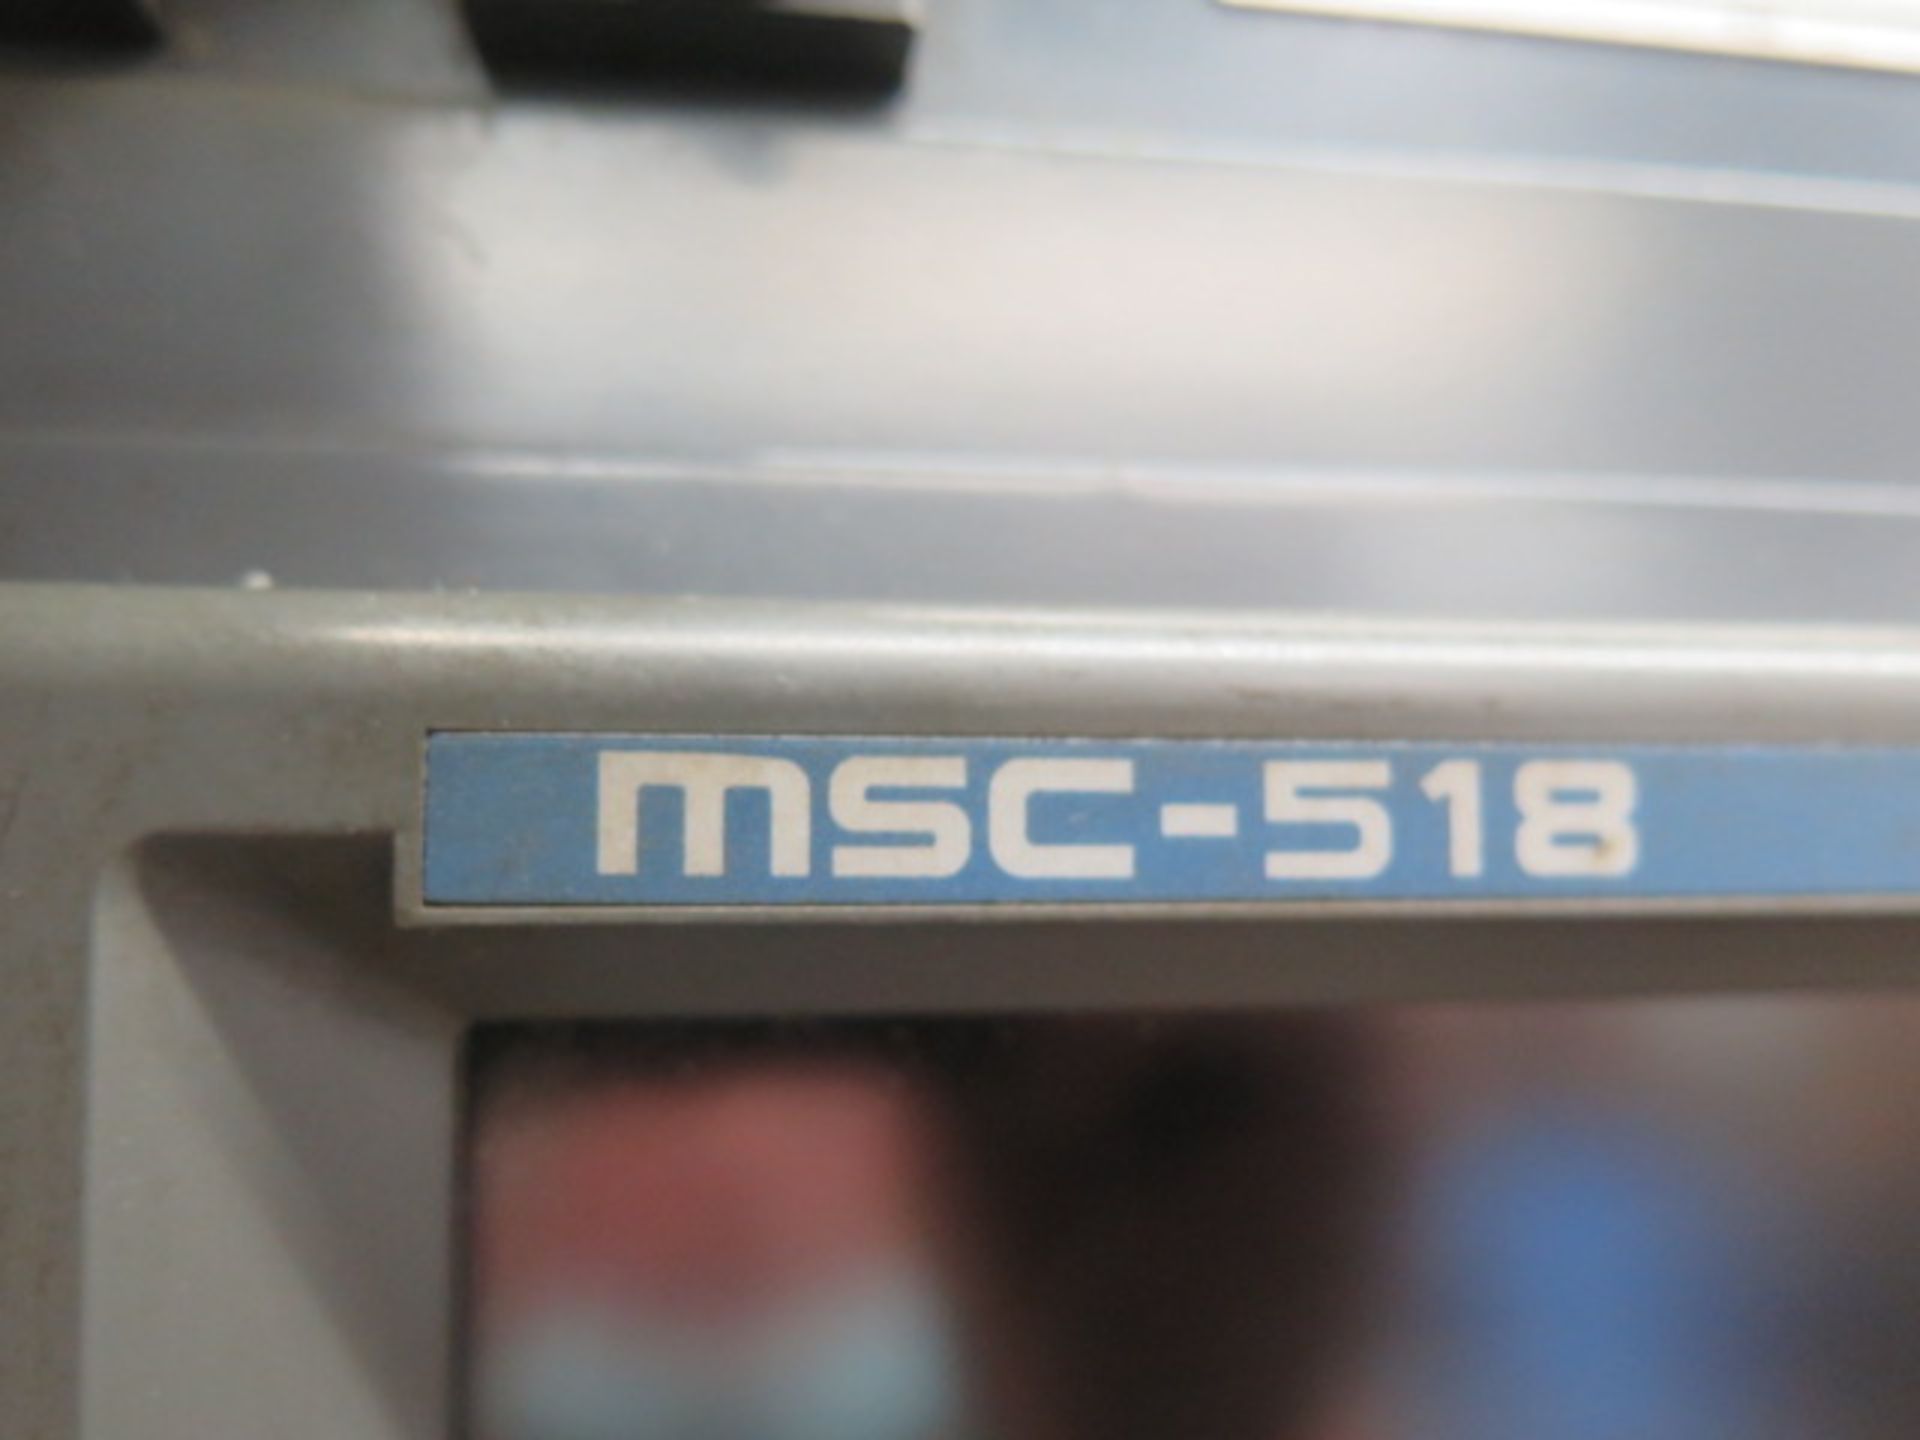 1996 Mori Seiki SV-50/40 CNC VMC s/n 221 w/ Mori Seiki MSC-518, SOLD AS IS W/ NO WARRANTY - Image 10 of 27